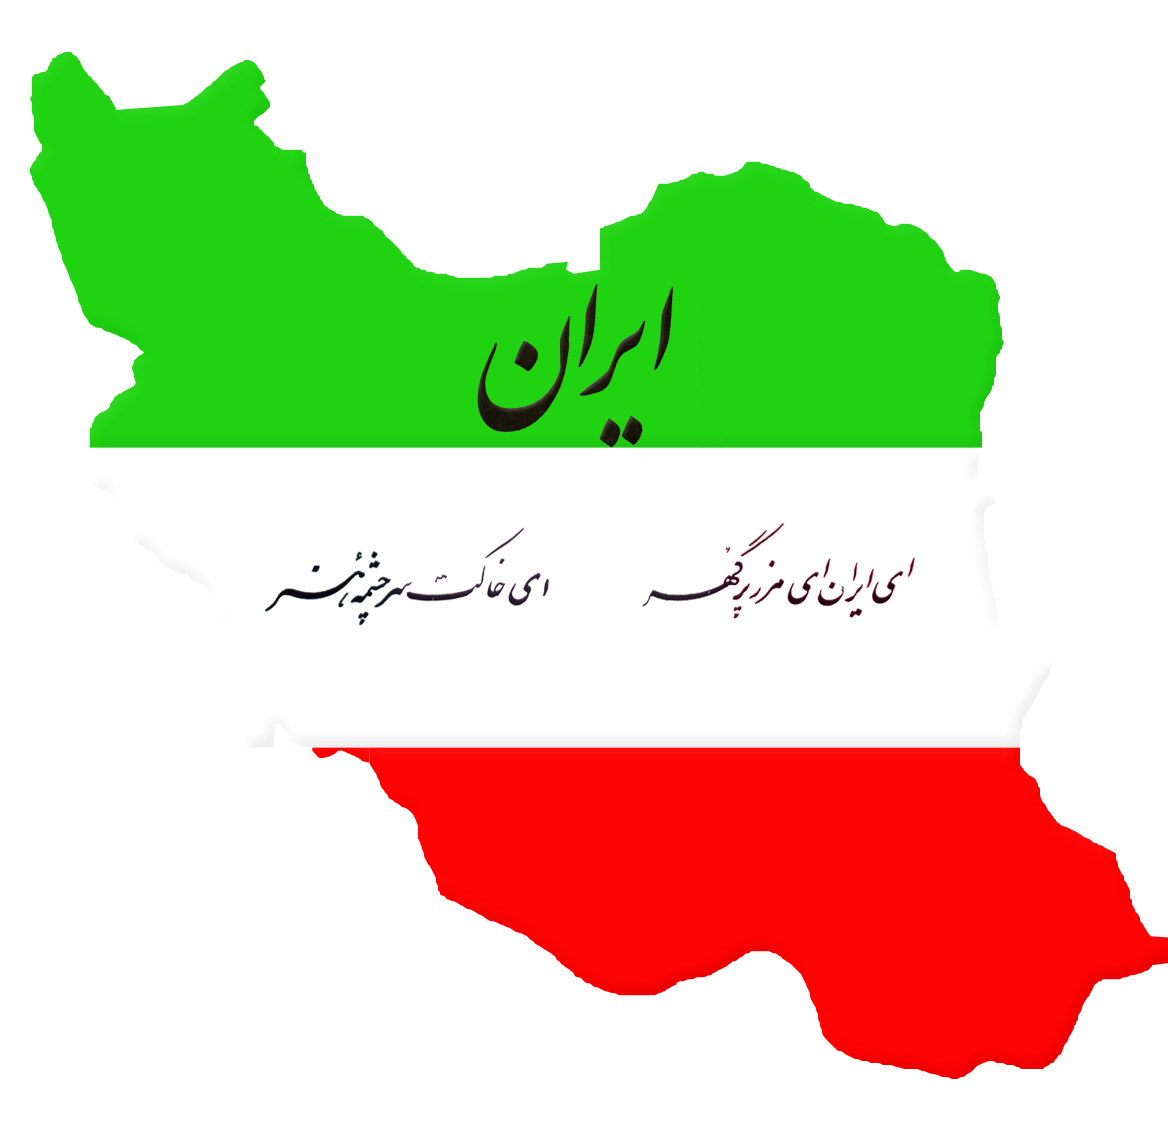 تصویر زیبای نقشه ایران